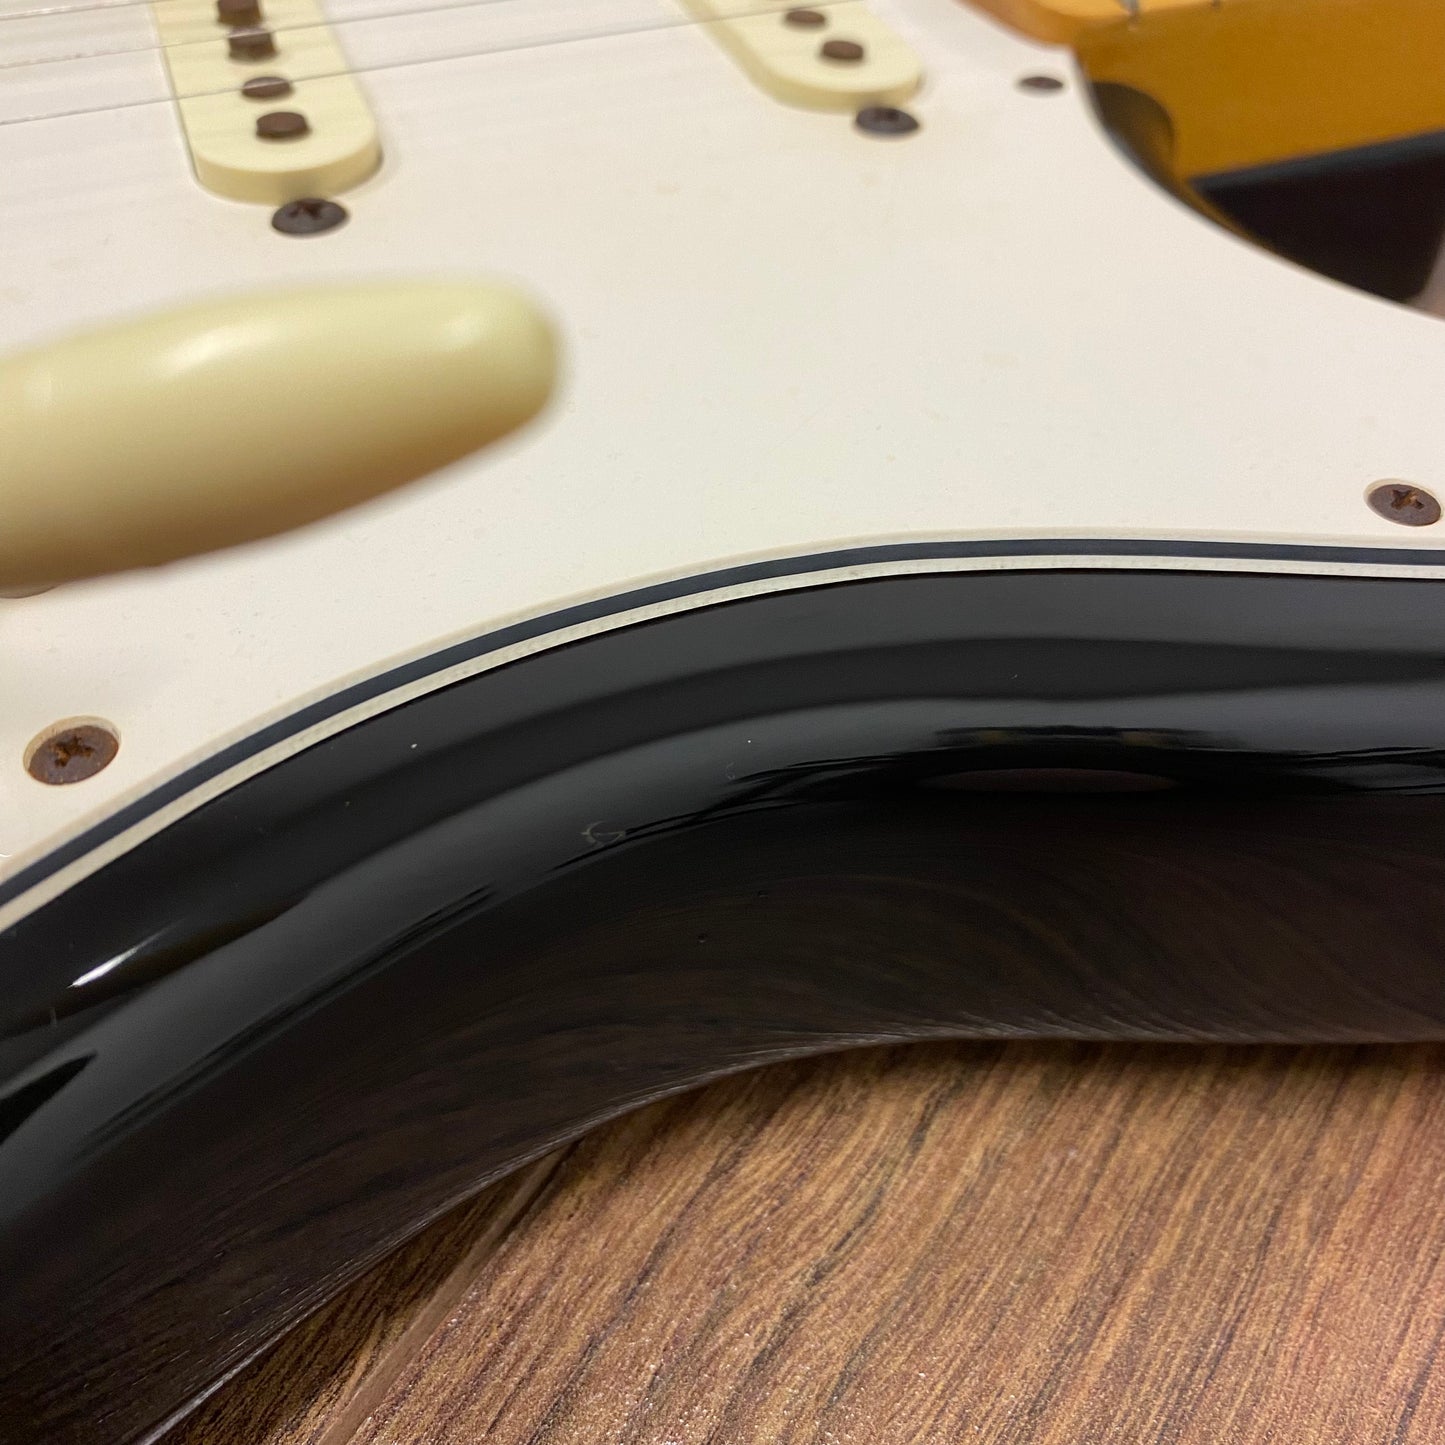 Pre-Owned Fender MIJ ST-67 Stratocaster - 3-Tone Sunburst - 1996